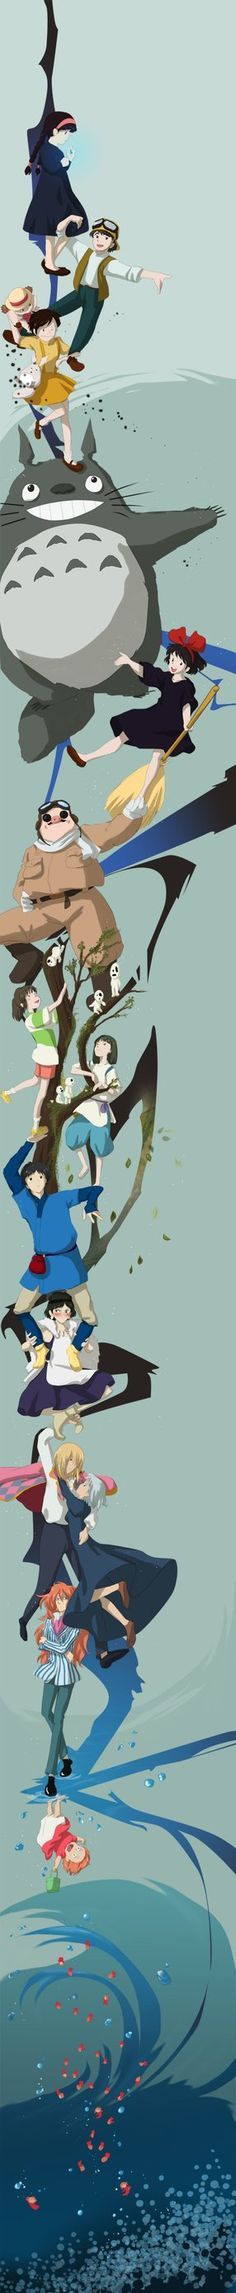 Hayao Miyazaki Anime